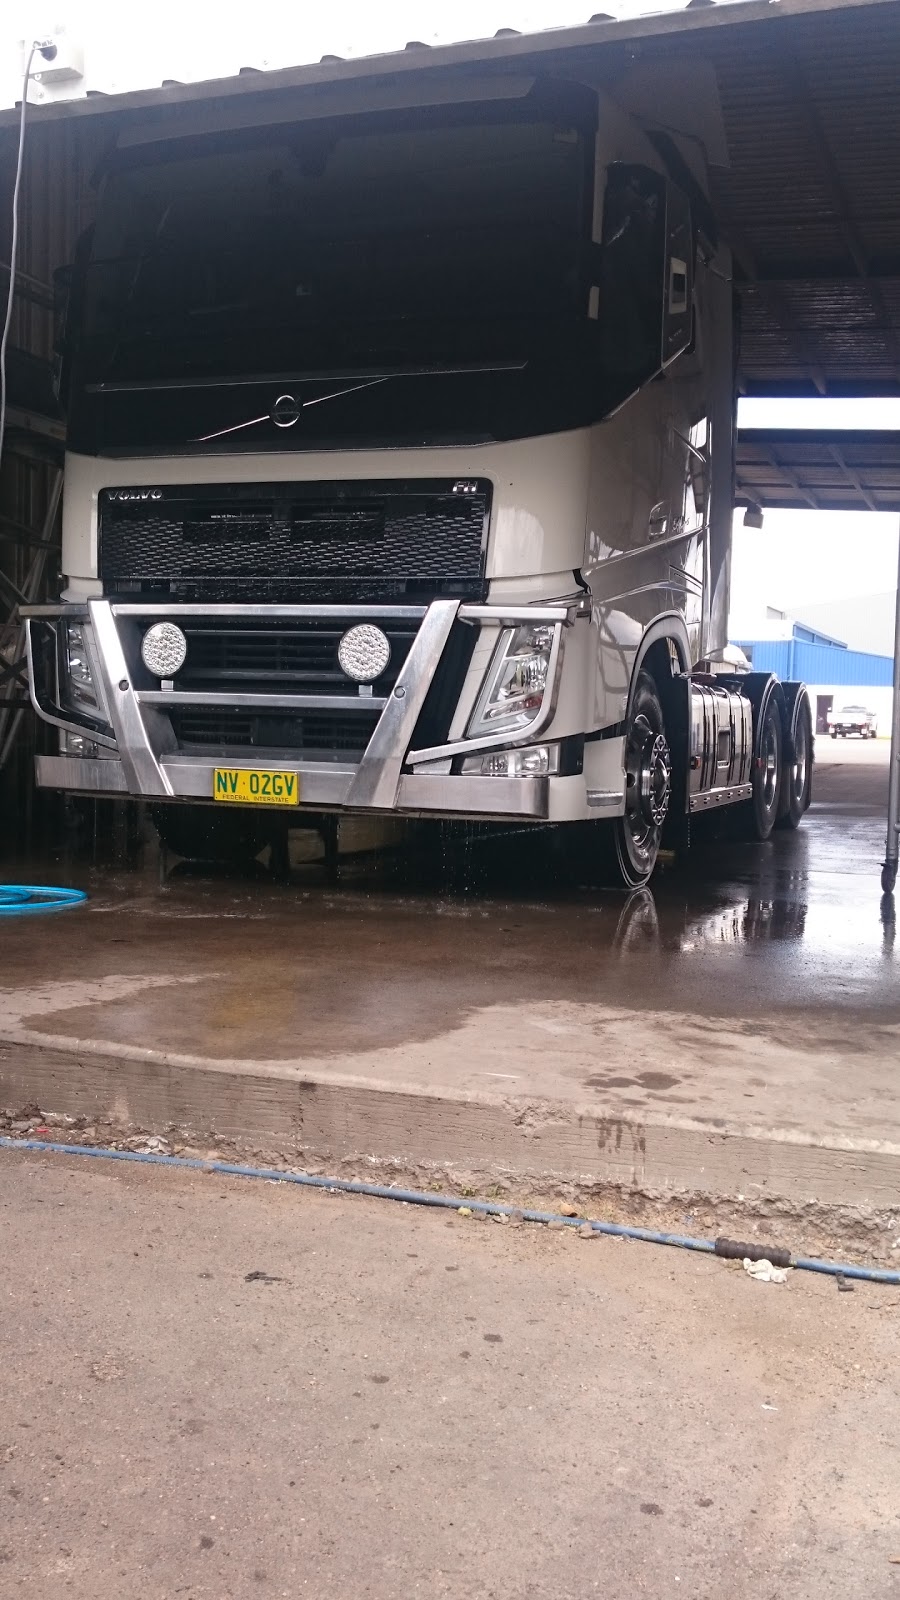 Singh Truck & Car Wash | car wash | 6/1717 Ipswich Rd, Rocklea QLD 4106, Australia | 0421092881 OR +61 421 092 881